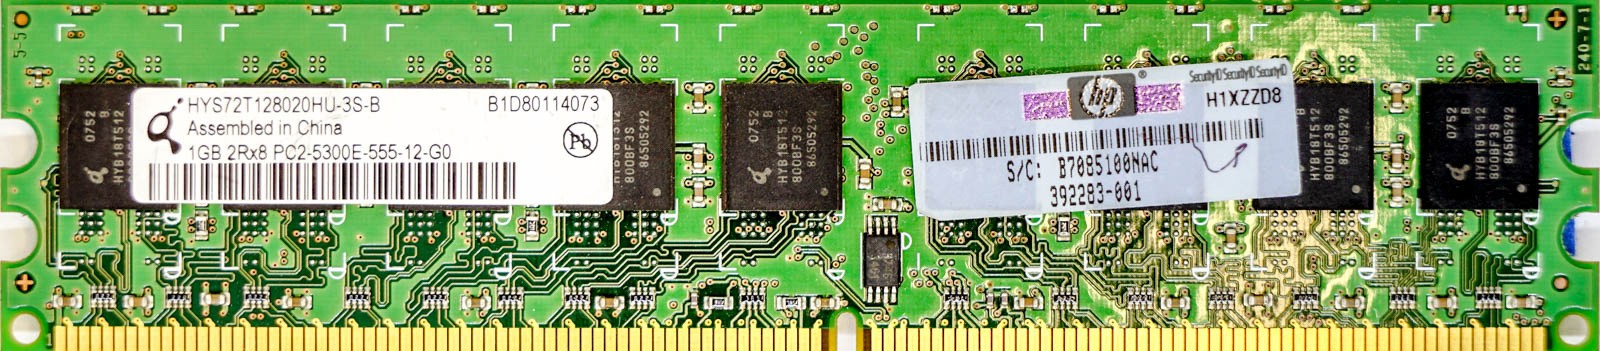 HP (392283-001) - 1GB PC2-5300E (DDR2-667Mhz, 2RX8)